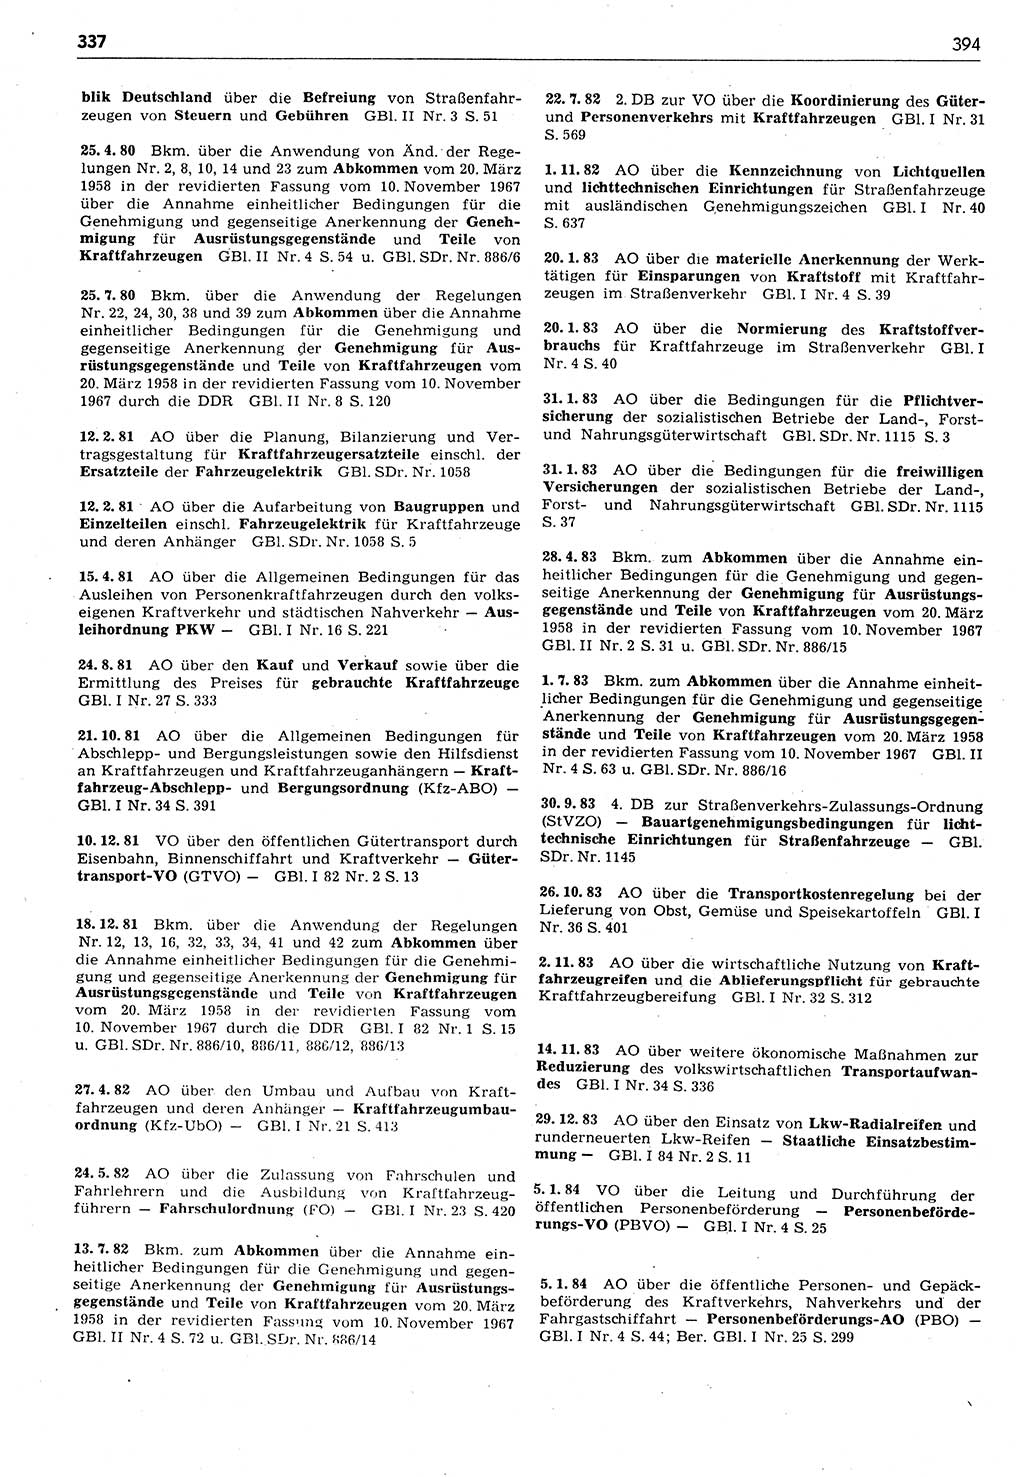 Das geltende Recht der Deutschen Demokratischen Republik (DDR) 1949-1988, Seite 394 (Gelt. R. DDR 1949-1988, S. 394)